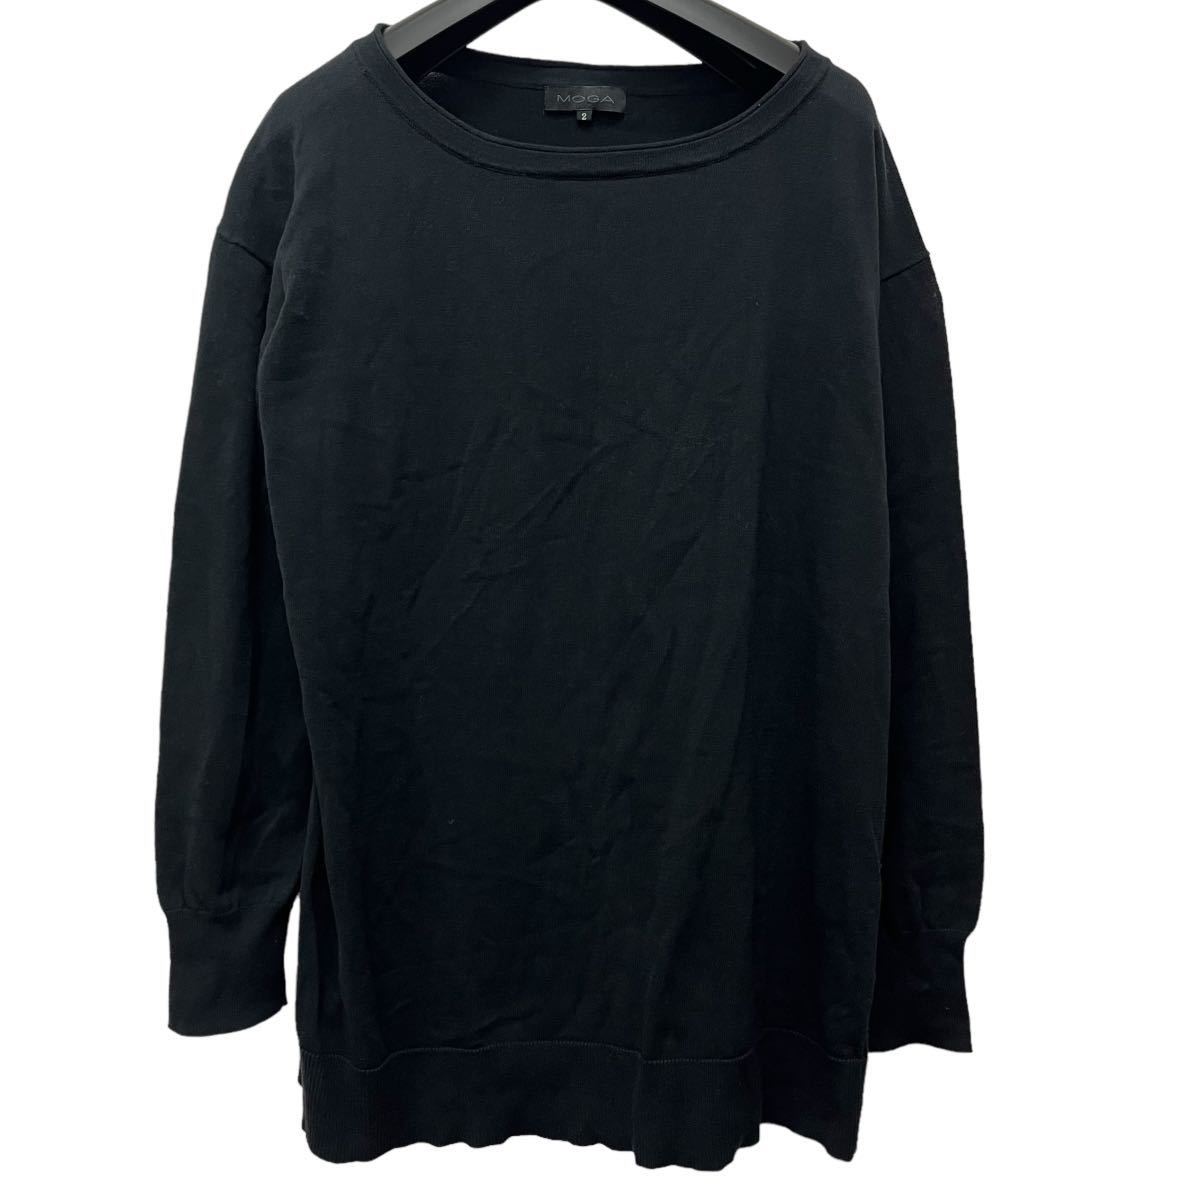 MOGA / モガ レディース 長袖Tシャツ カットソー ブラック 2サイズ 薄手 O-2027の画像1